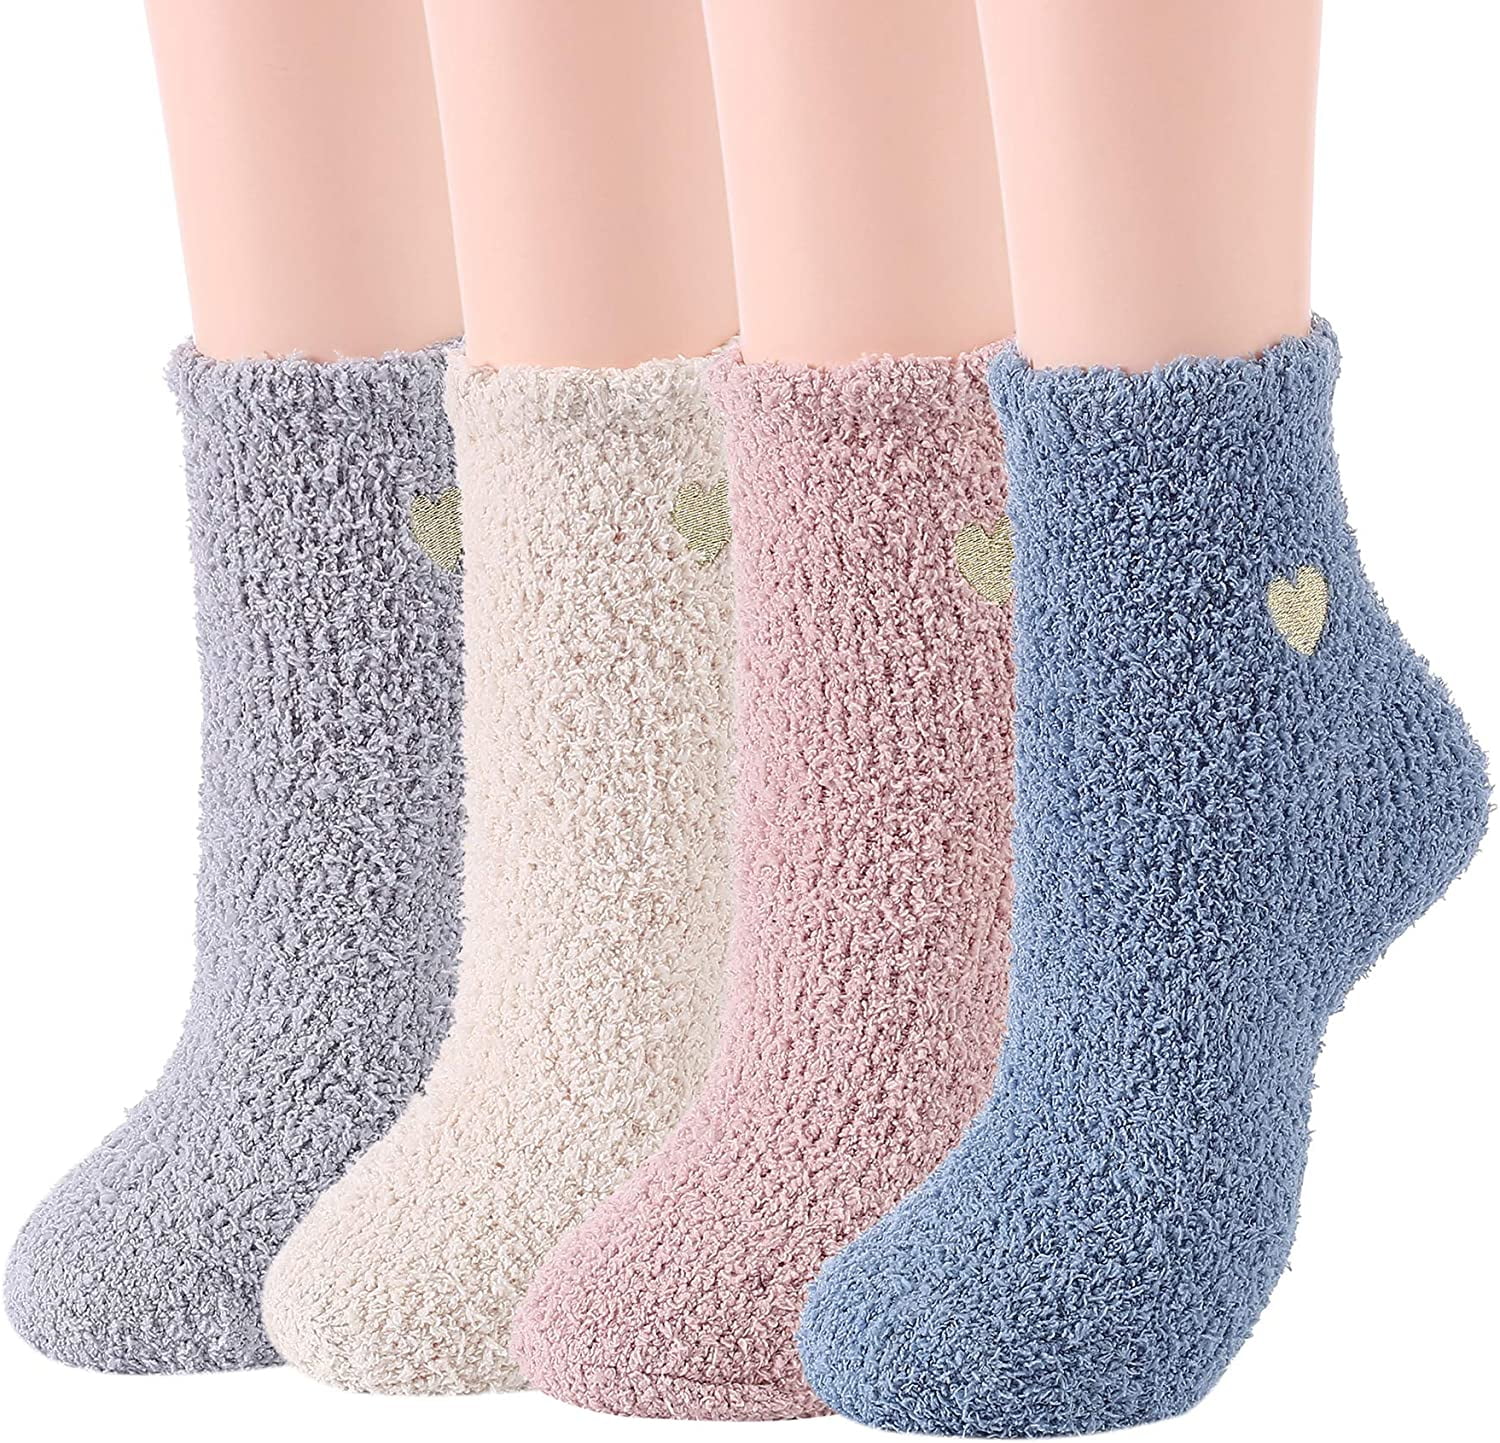 Winter Fluffy Socks Non Slip Slipper Socks Plush Thick Cozy Socks Warm Fluffy Crew Socks Fuzzy Socks For Women Men